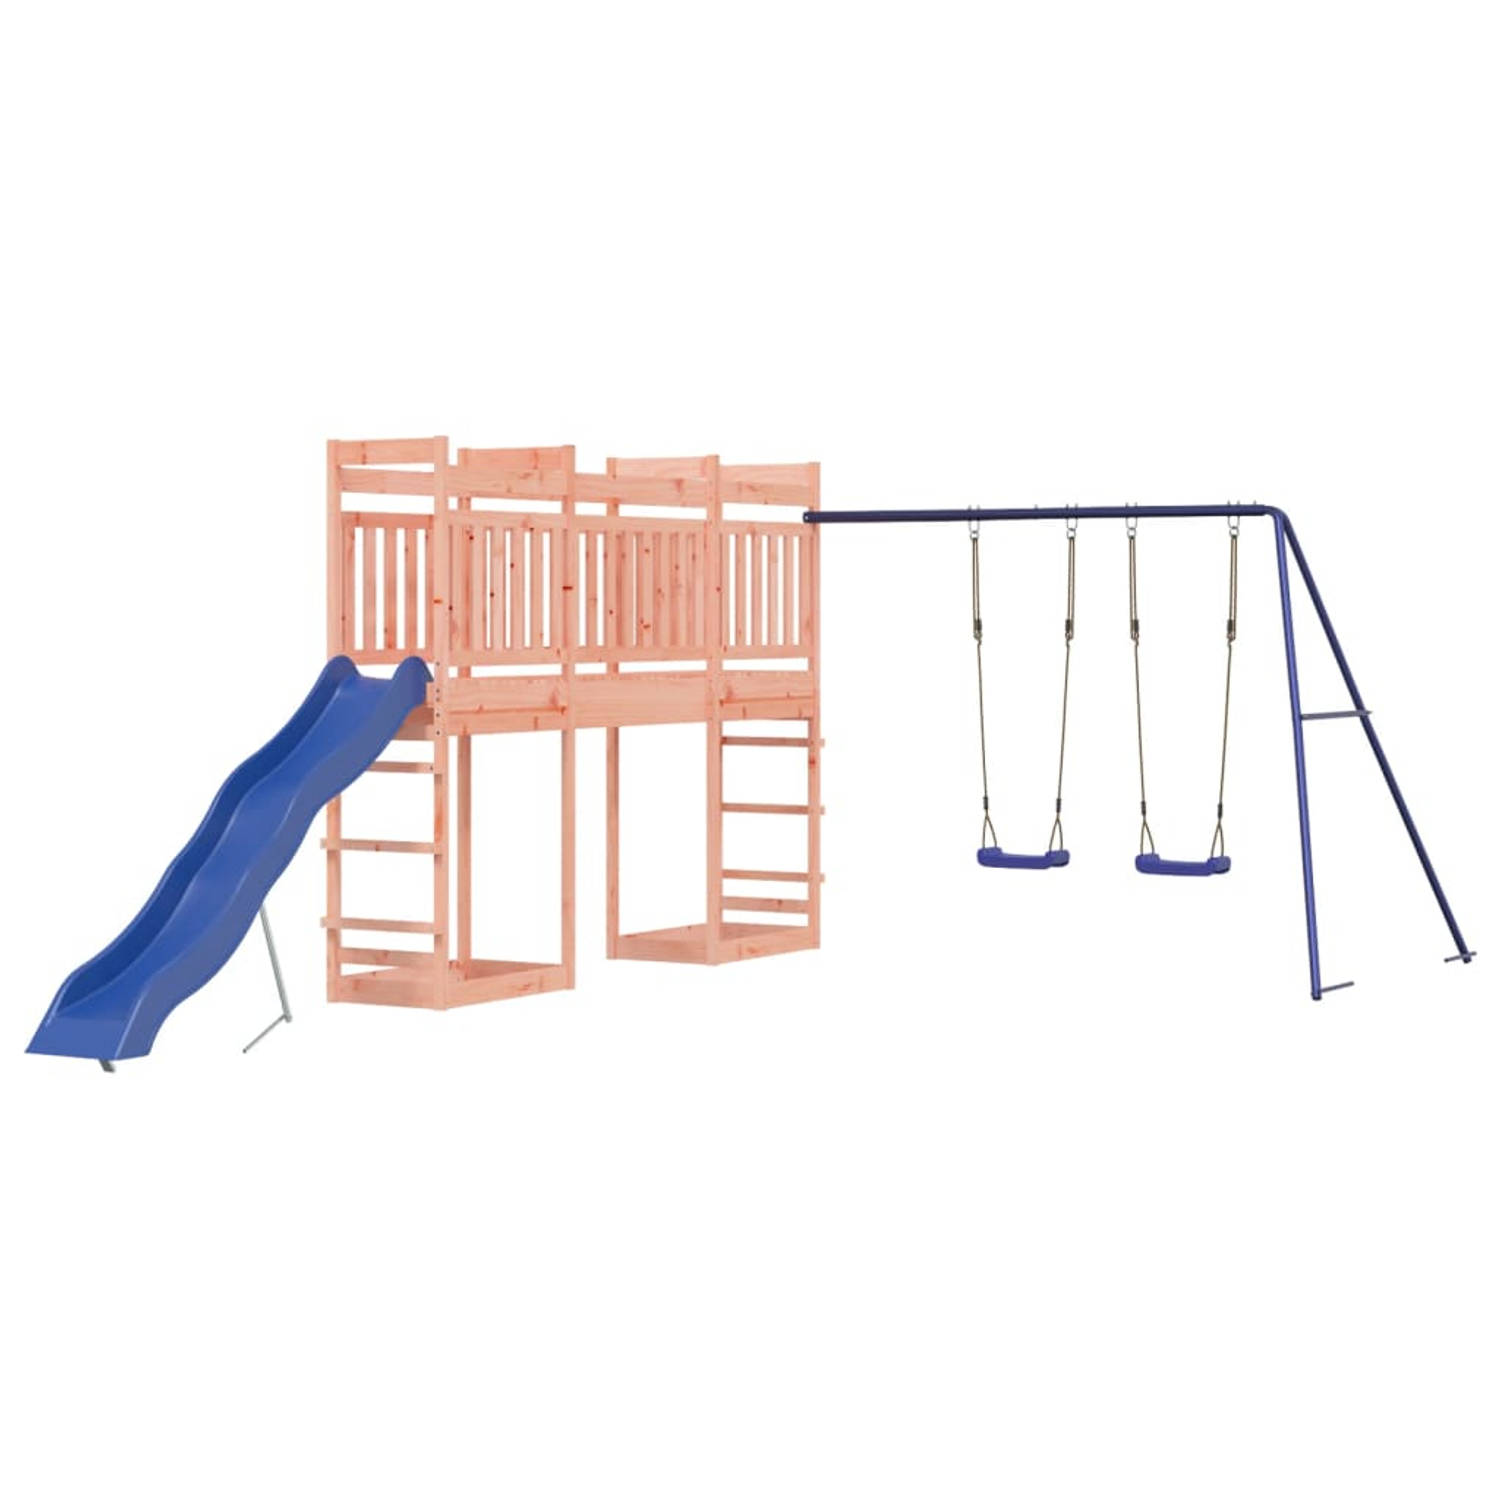 The Living Store Speeltorens met brug - Massief douglashout - Golfglijbaan - Dubbele schommelset - 314 x 535 x 207 cm - Blauwe glijbaan - Blauwe schommel - Montage vereist